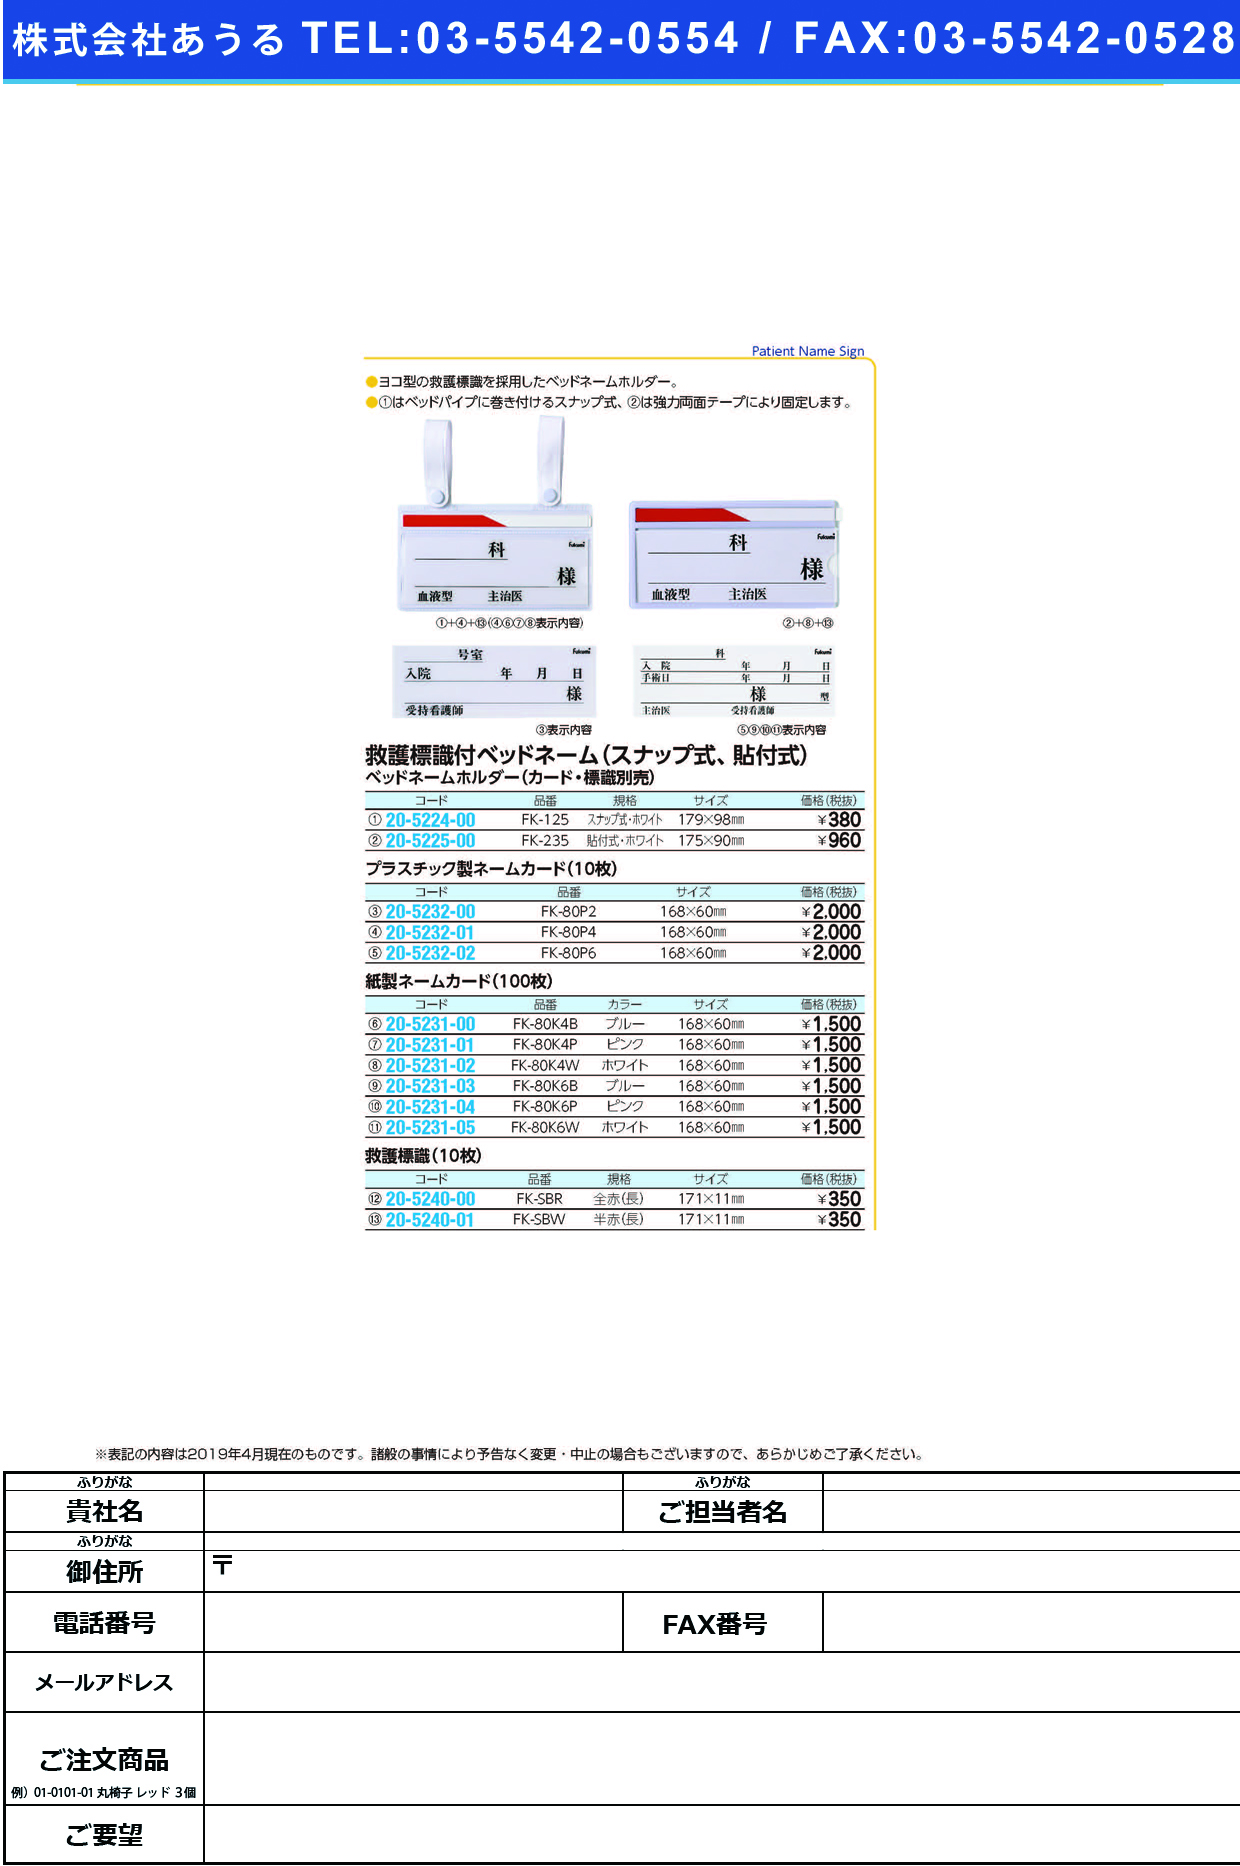 (20-5224-00)ベッドネームホルダー FK-125(ｽﾅｯﾌﾟｼｷ) ﾍﾞｯﾄﾞﾈｰﾑﾎﾙﾀﾞｰ【1枚単位】【2019年カタログ商品】